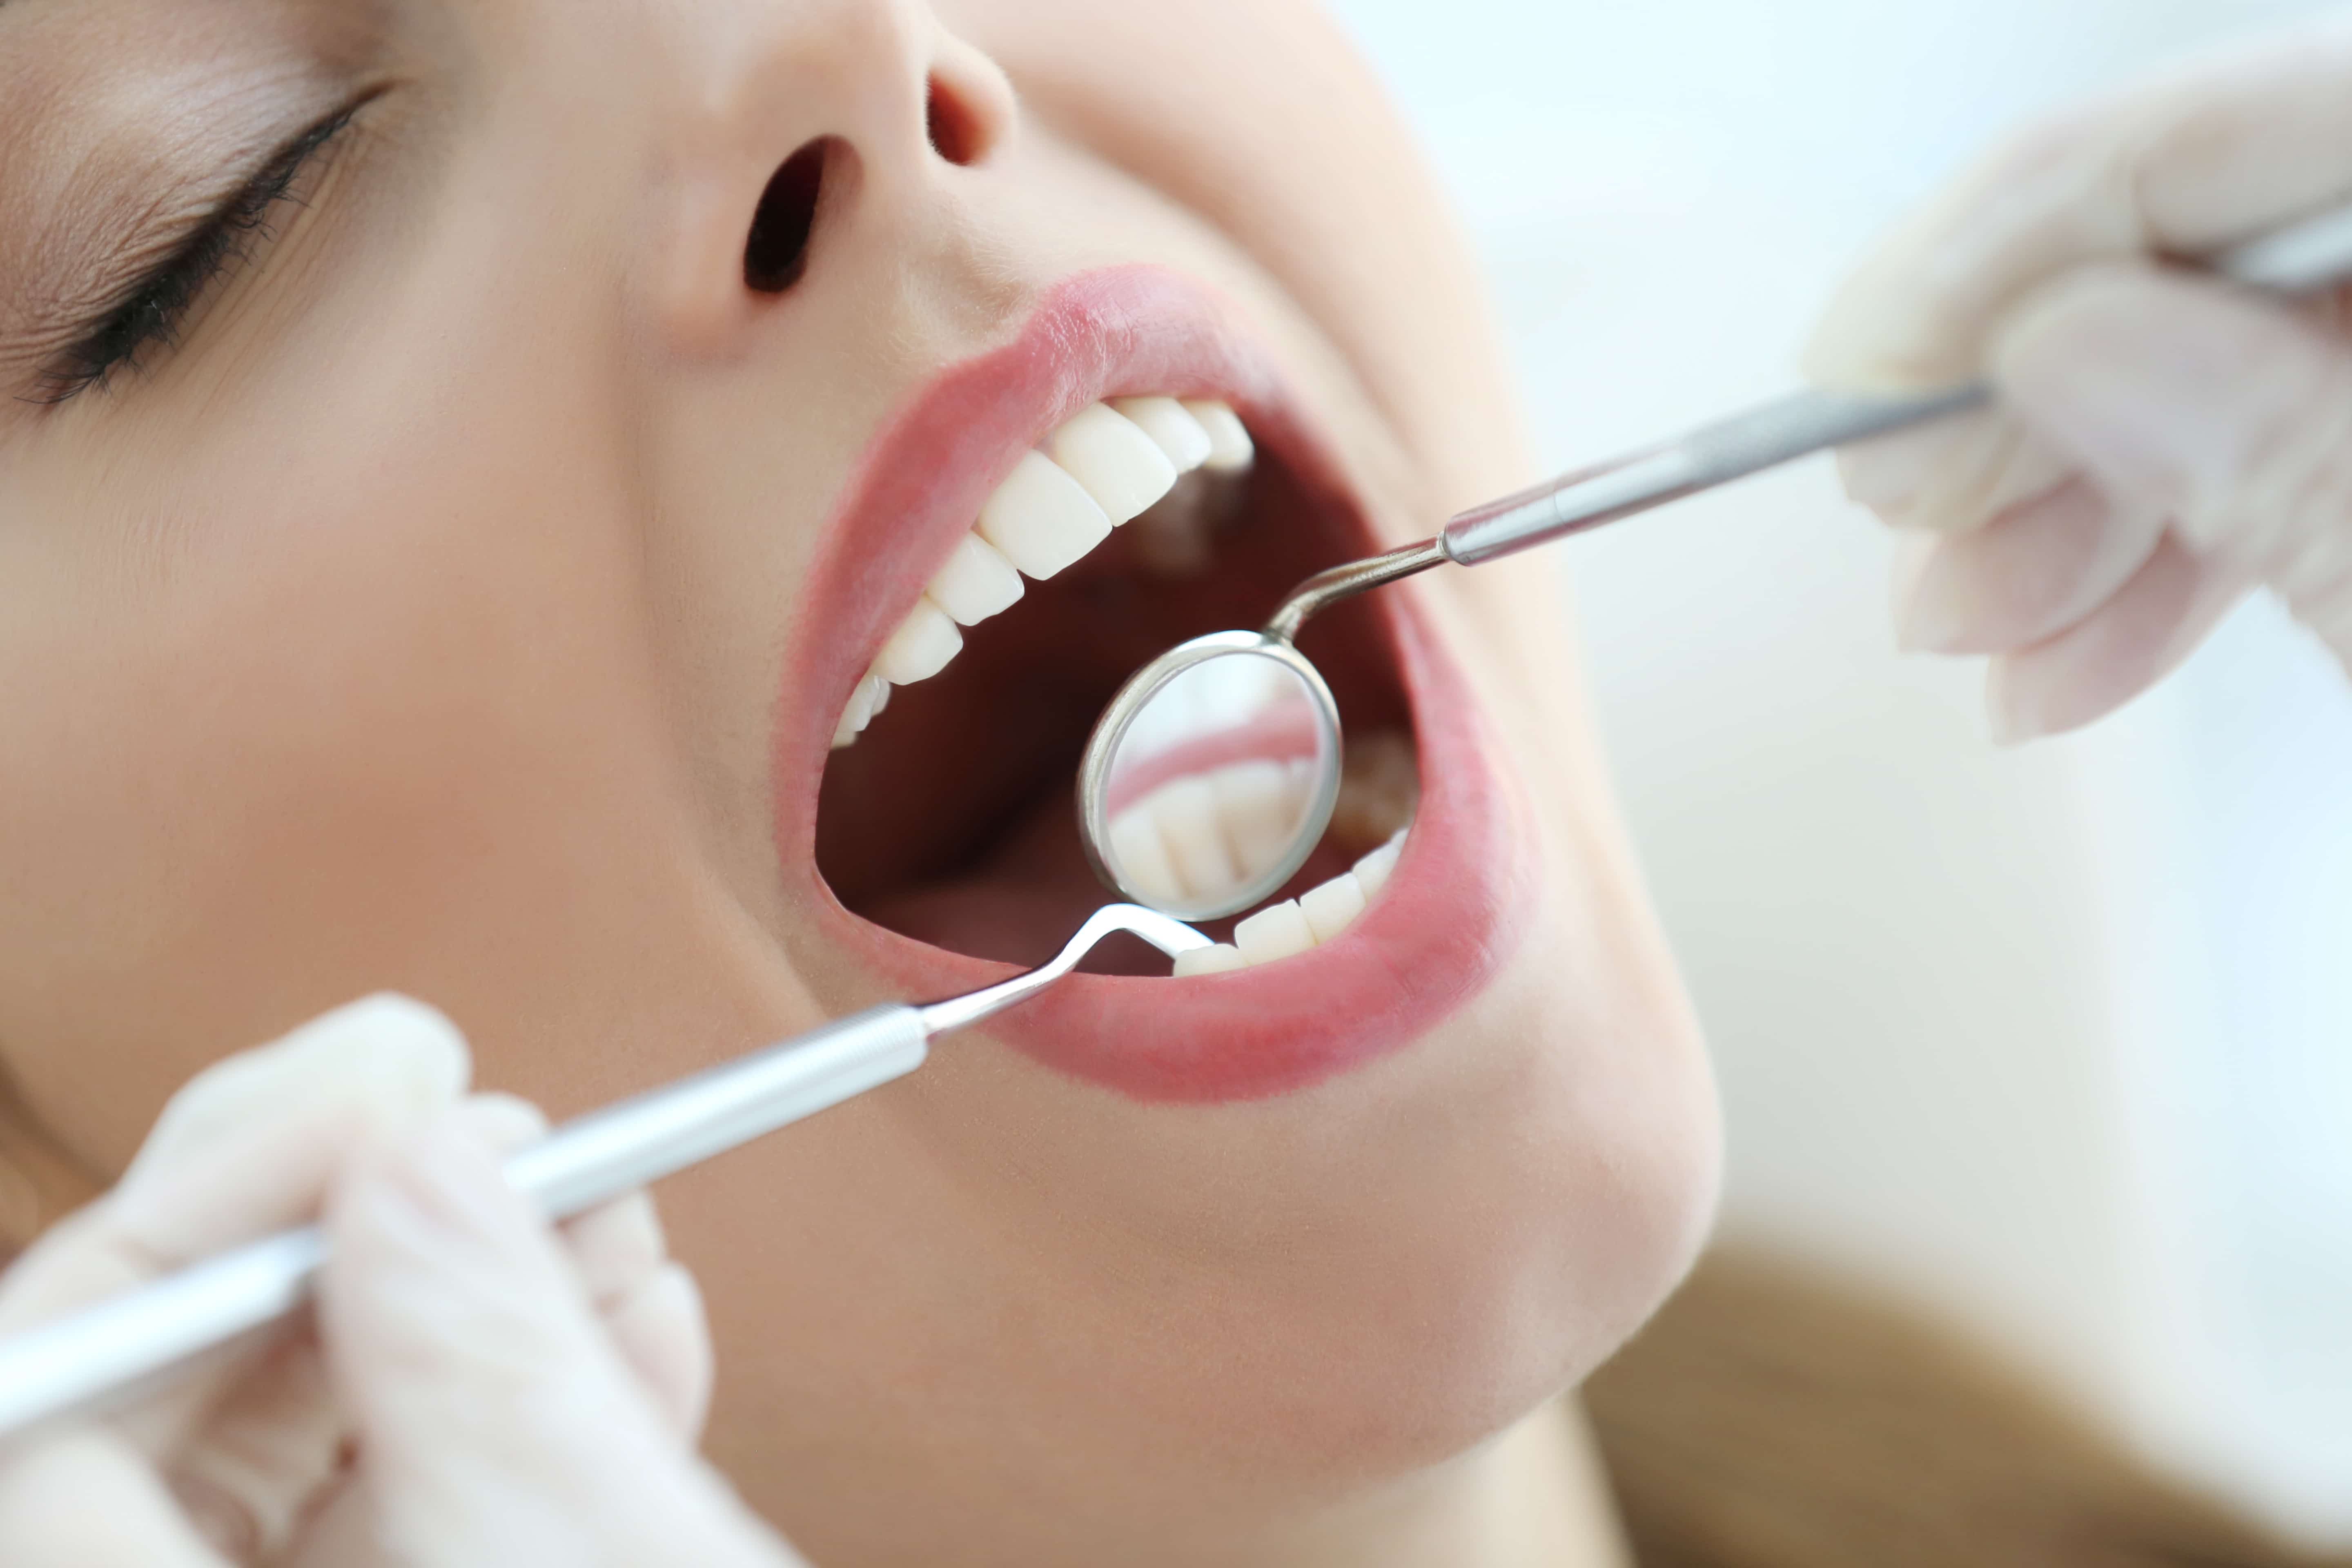 Лечение полости рта и зубов. Осмотр стоматолога. Осмотр зубов у стоматолога. Профессиональная гигиена полости рта. Осмотр полости рта у стоматолога.